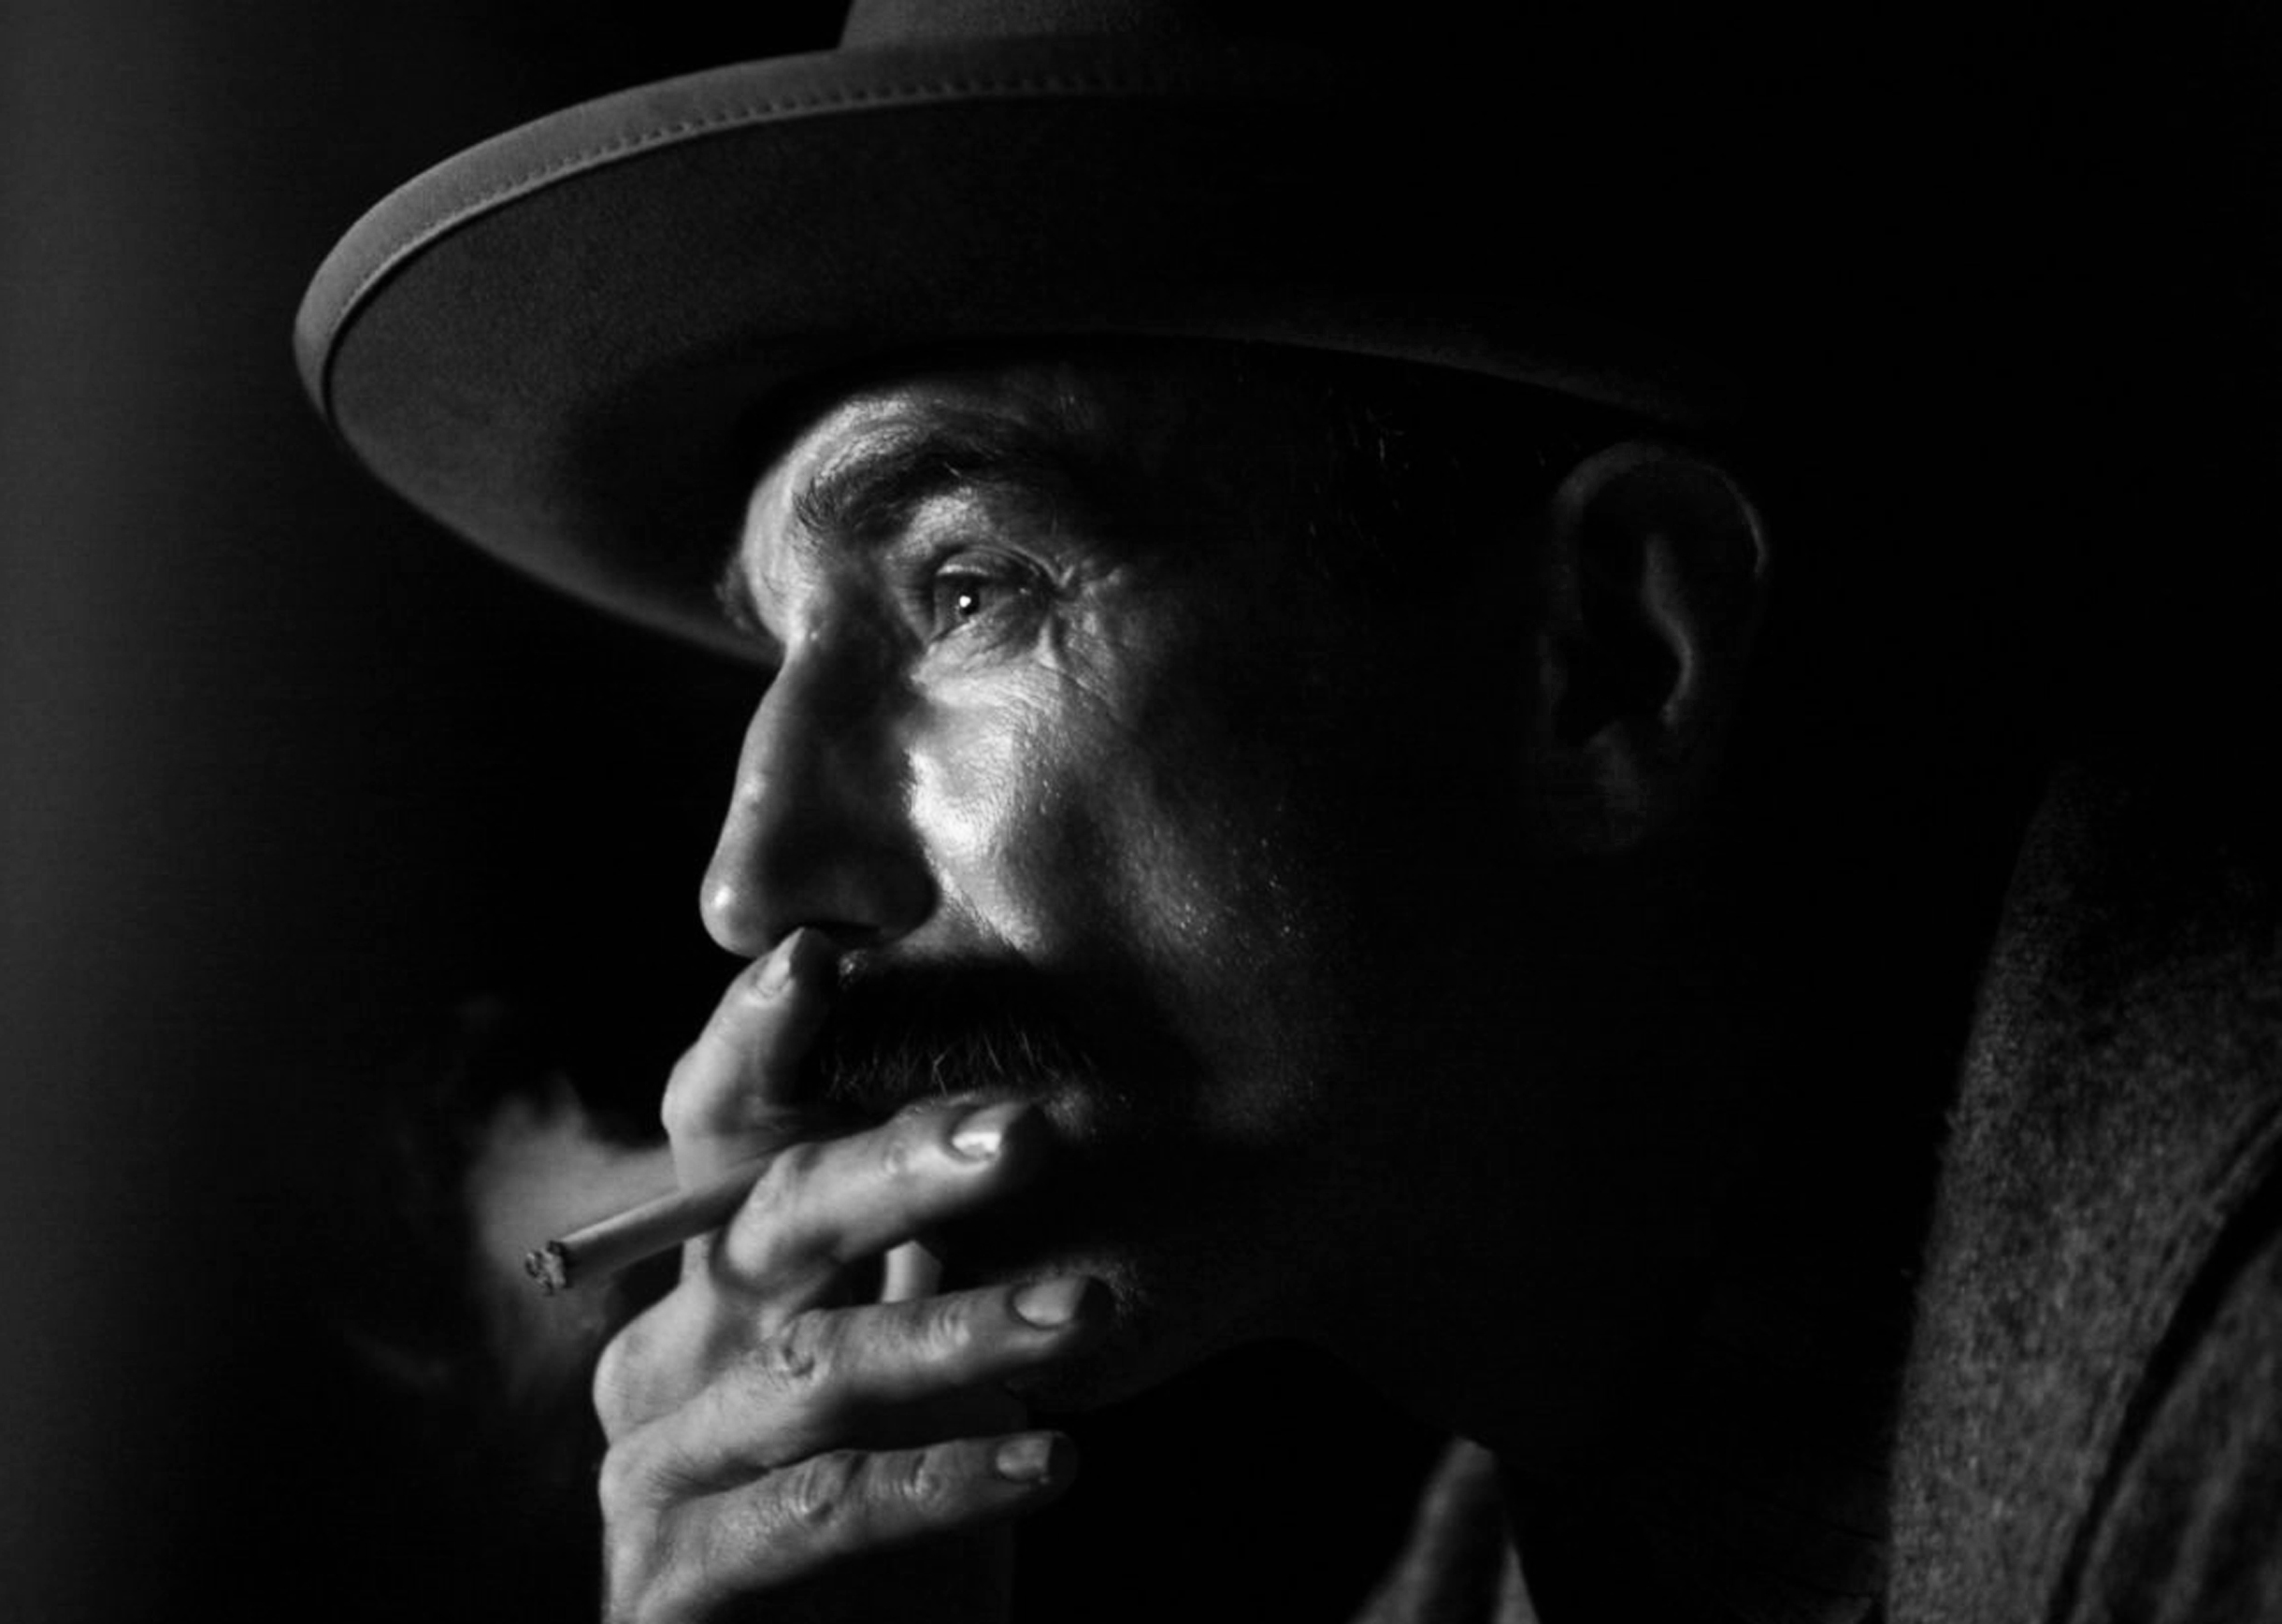 smoking, men, actors, Daniel Day-Lewis, portraits - desktop wallpaper